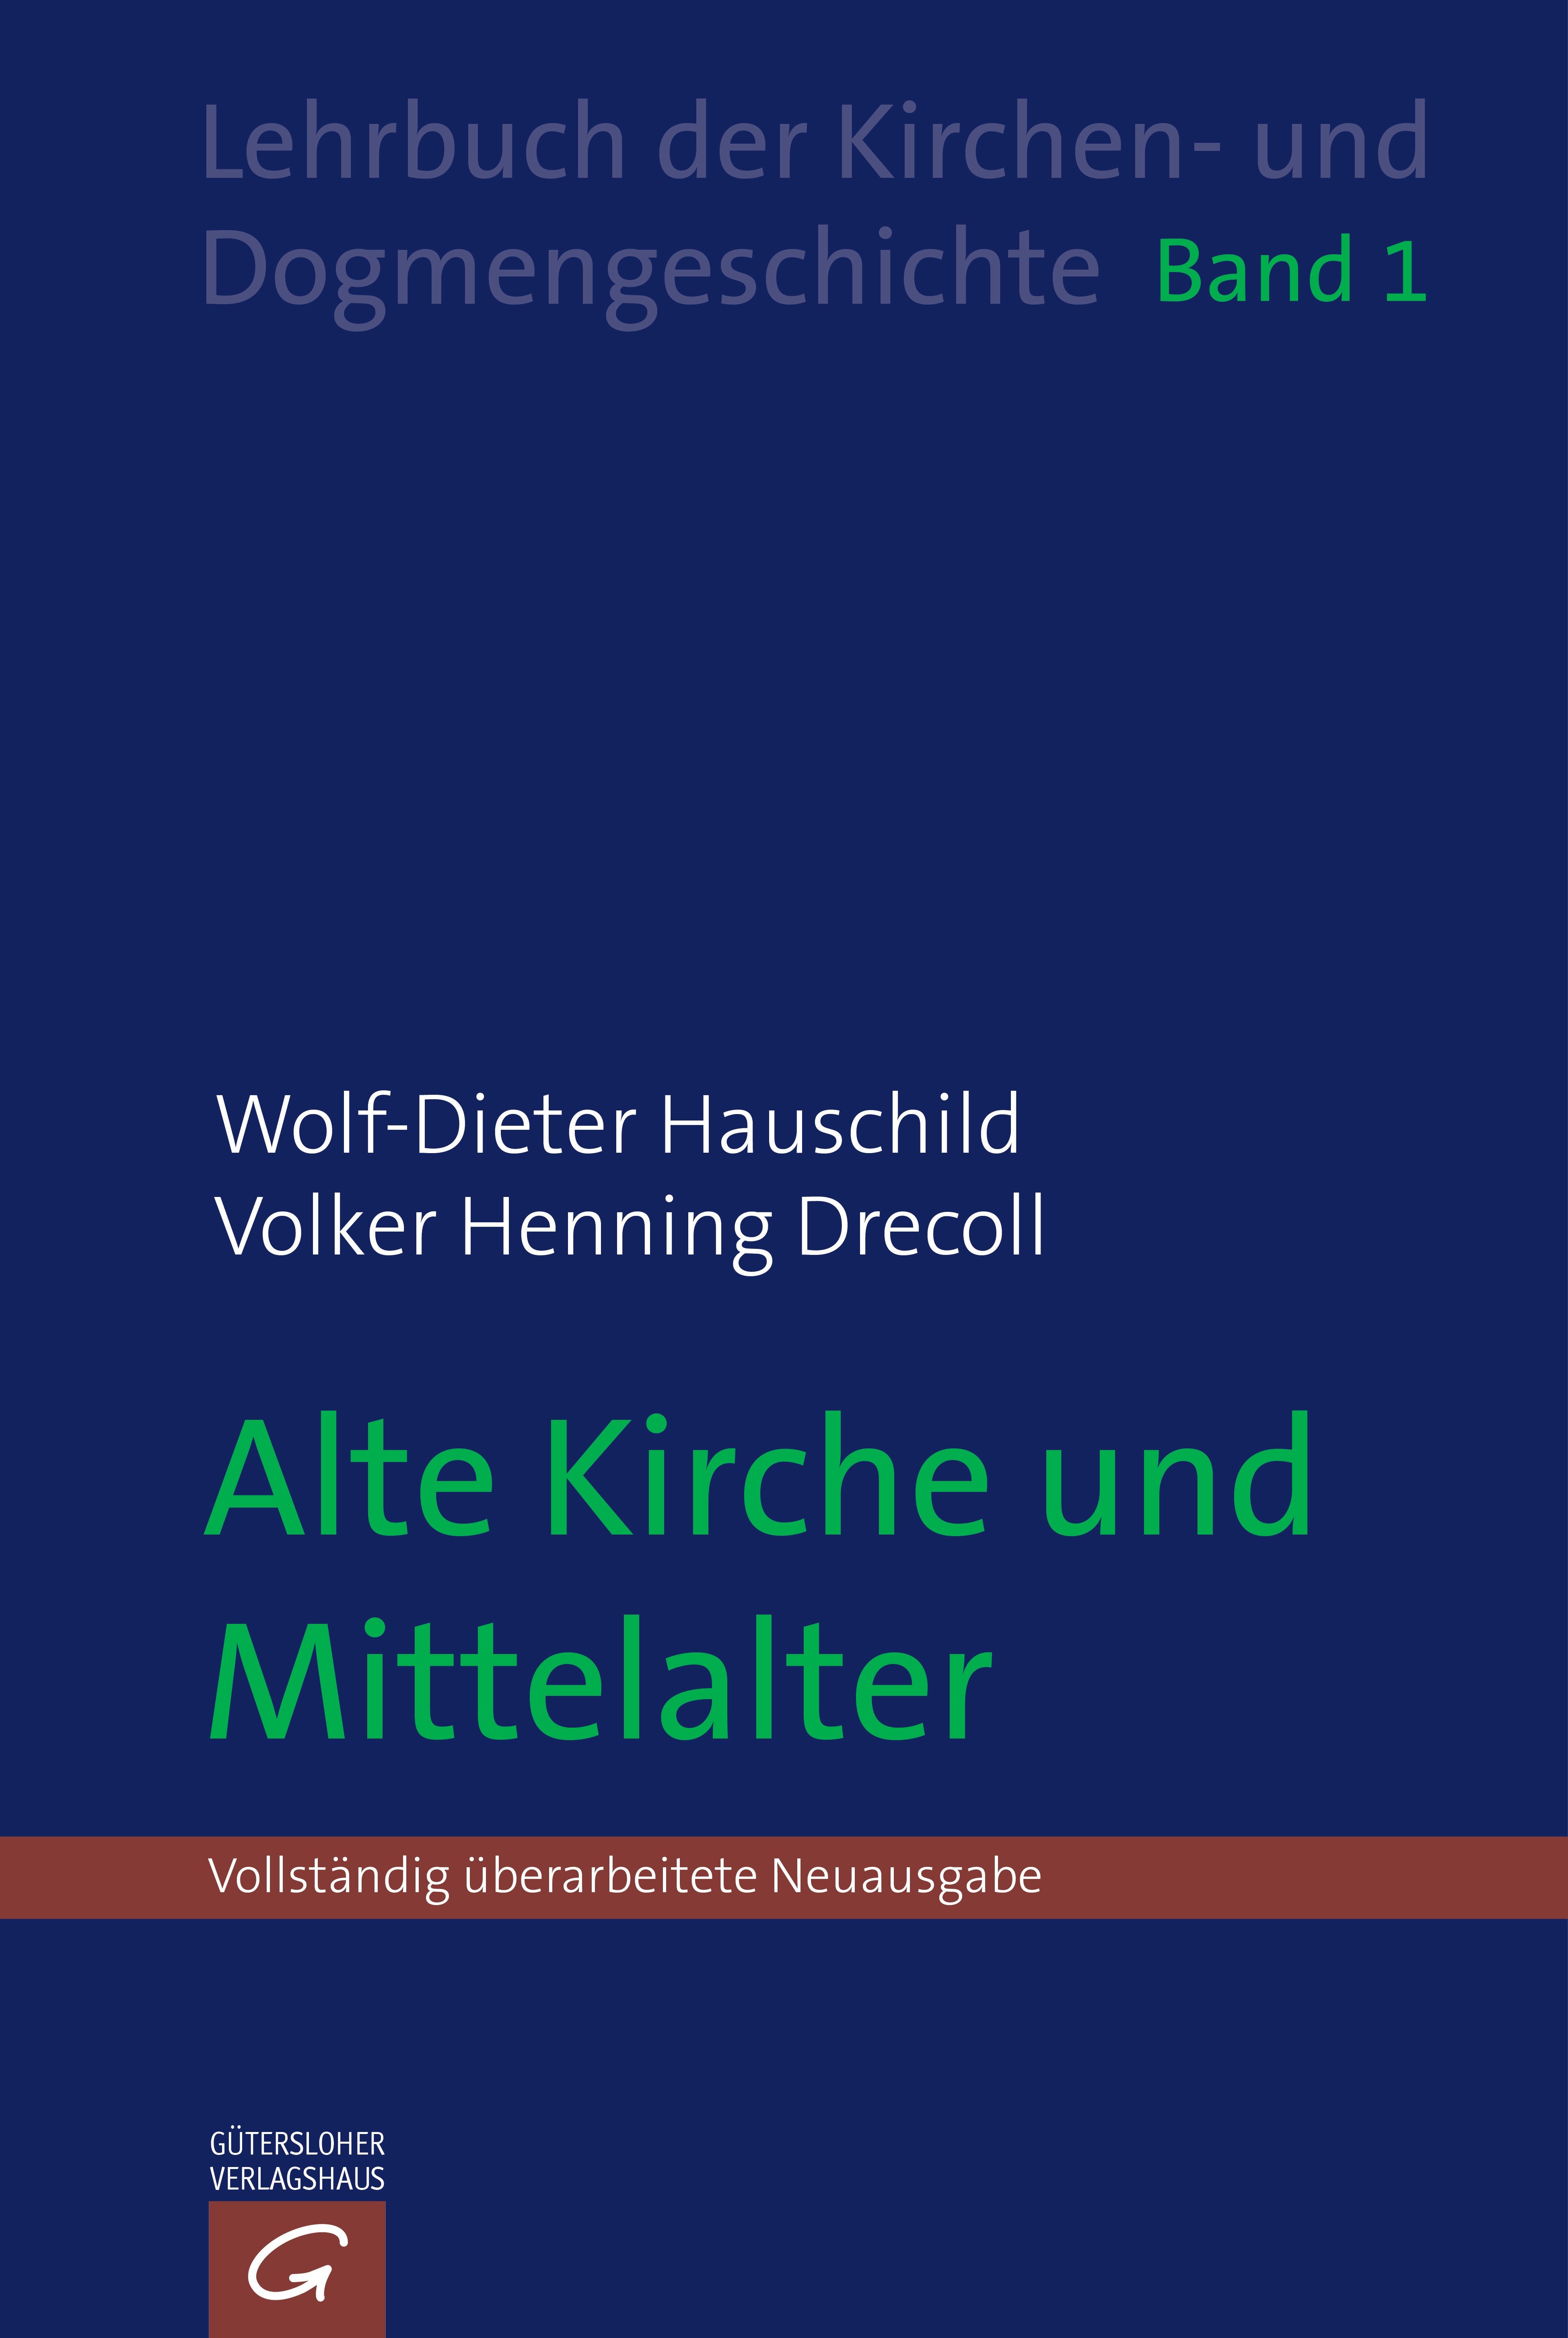 Lehrbuch der Kirchen- und Dogmengeschichte / Alte Kirche und Mittelalter